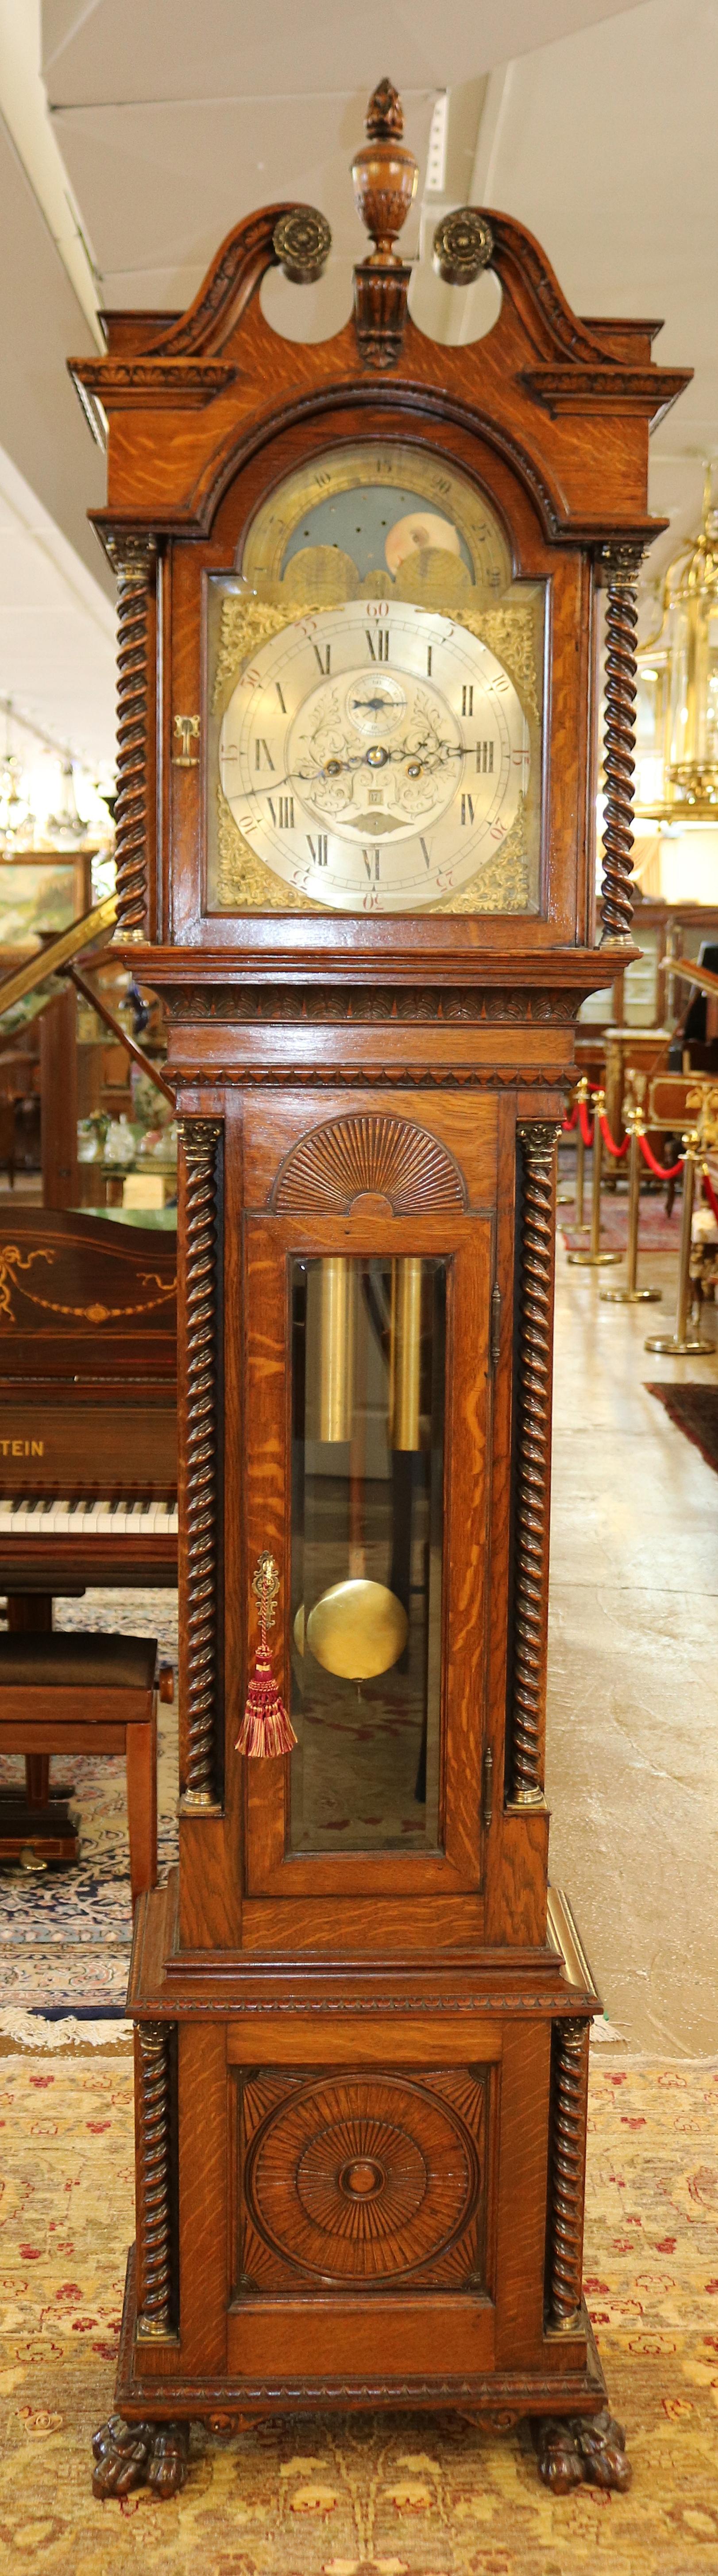 Horloge de grand-père Walter Durfee du 19ème siècle en chêne tigré à motif tigré avec 42 grands boîtiers

Dimensions : 99